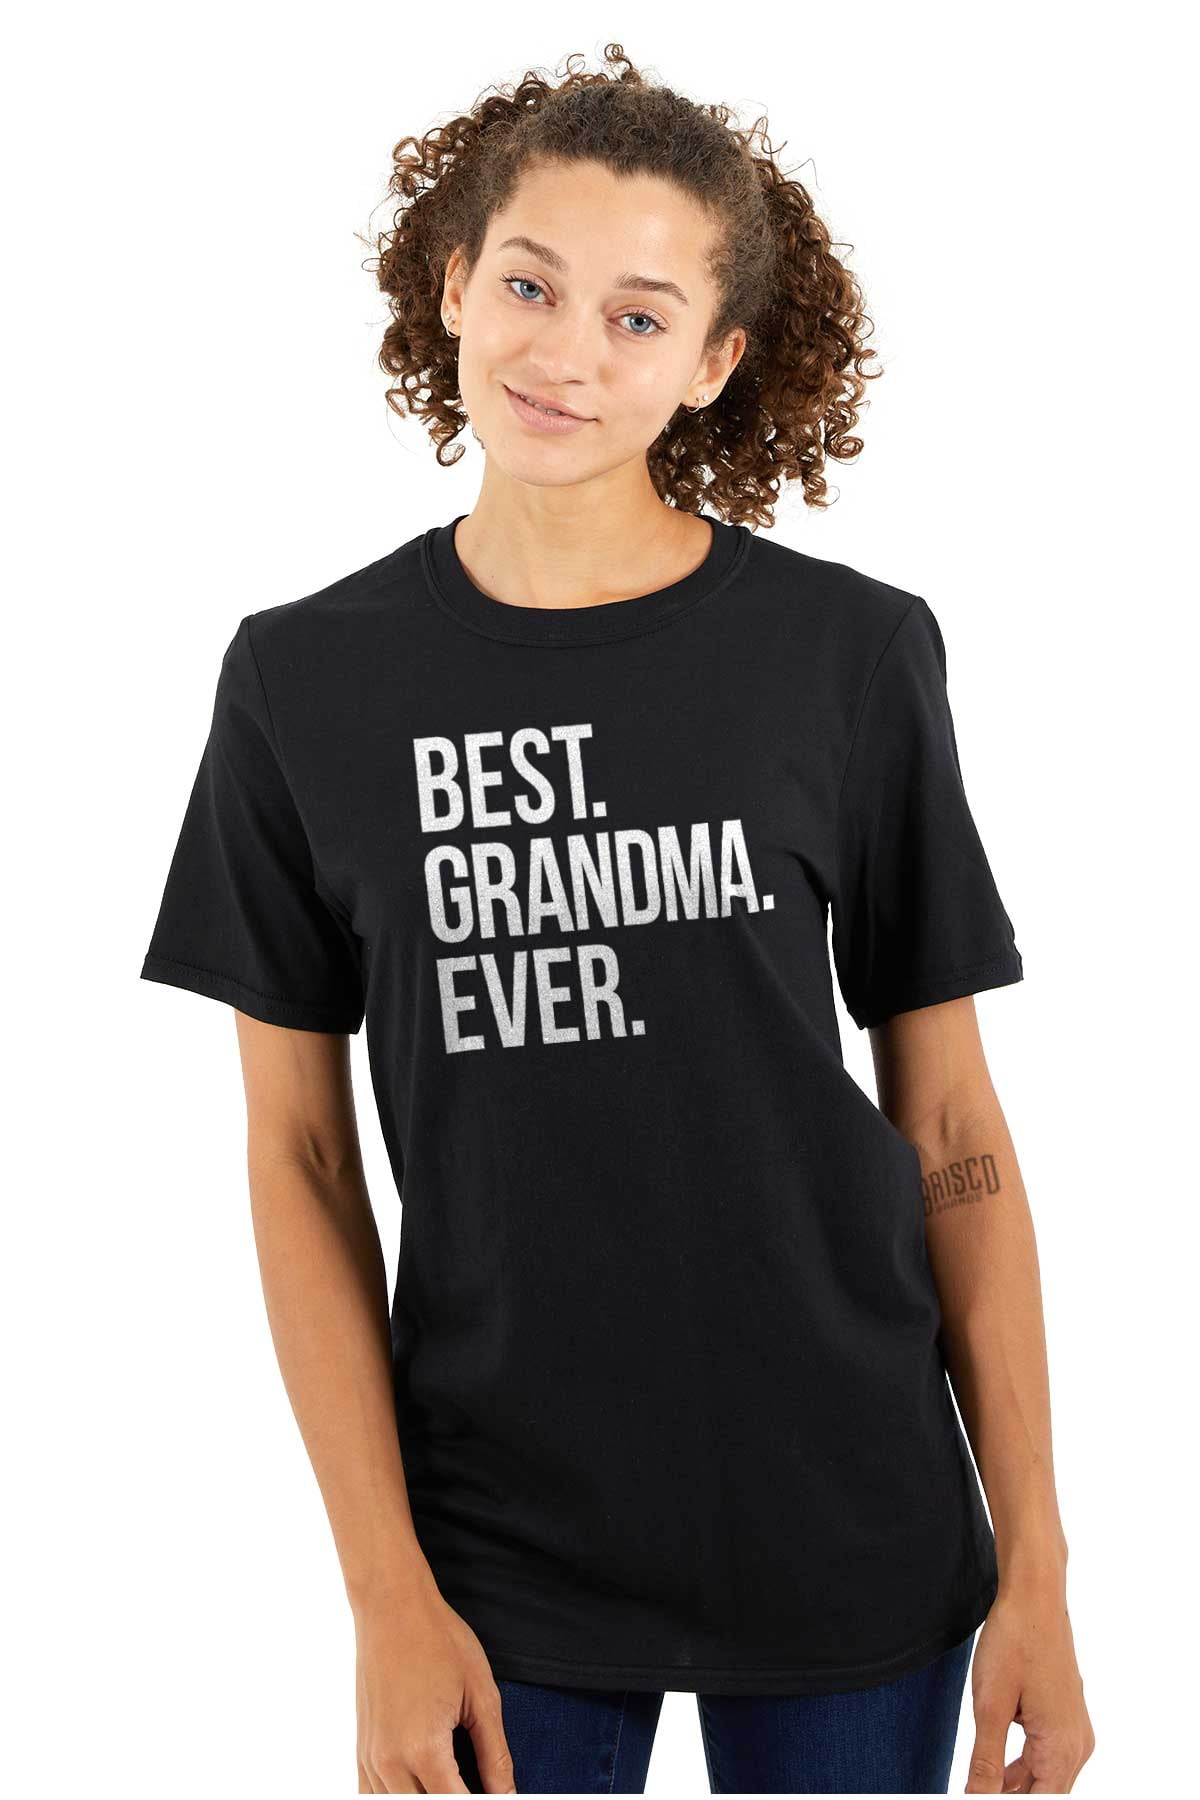 Best Grandma Ever Nanna Gigi Nan Cute Women's Graphic T Shirt Tees ...